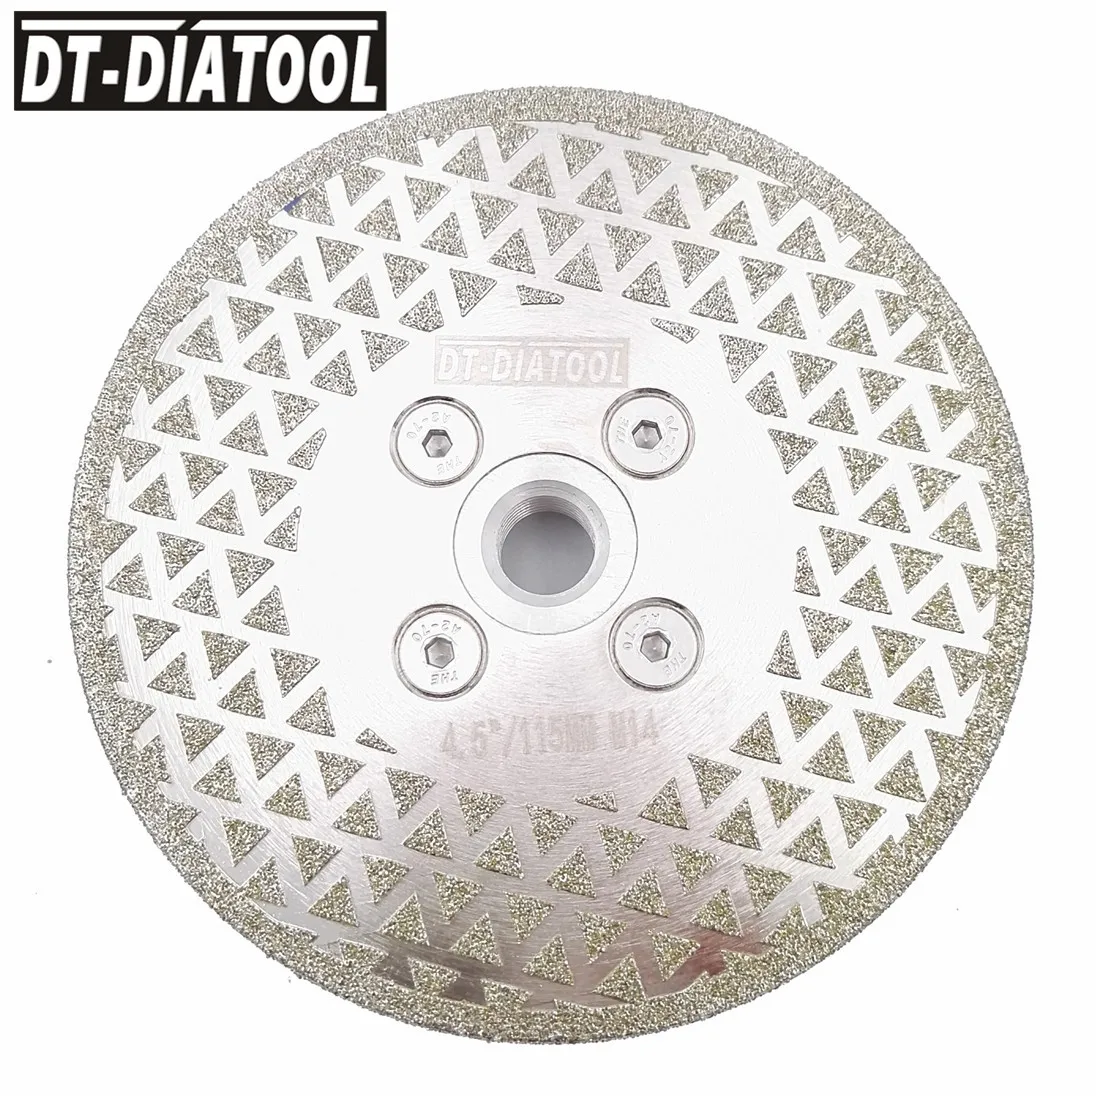 DT-DIATOOL гальванические алмазные режущие и Шлифовальные Лезвие M14 фланец, резьба для плитки Мрамор одной стороны покрытием Diamond пилы